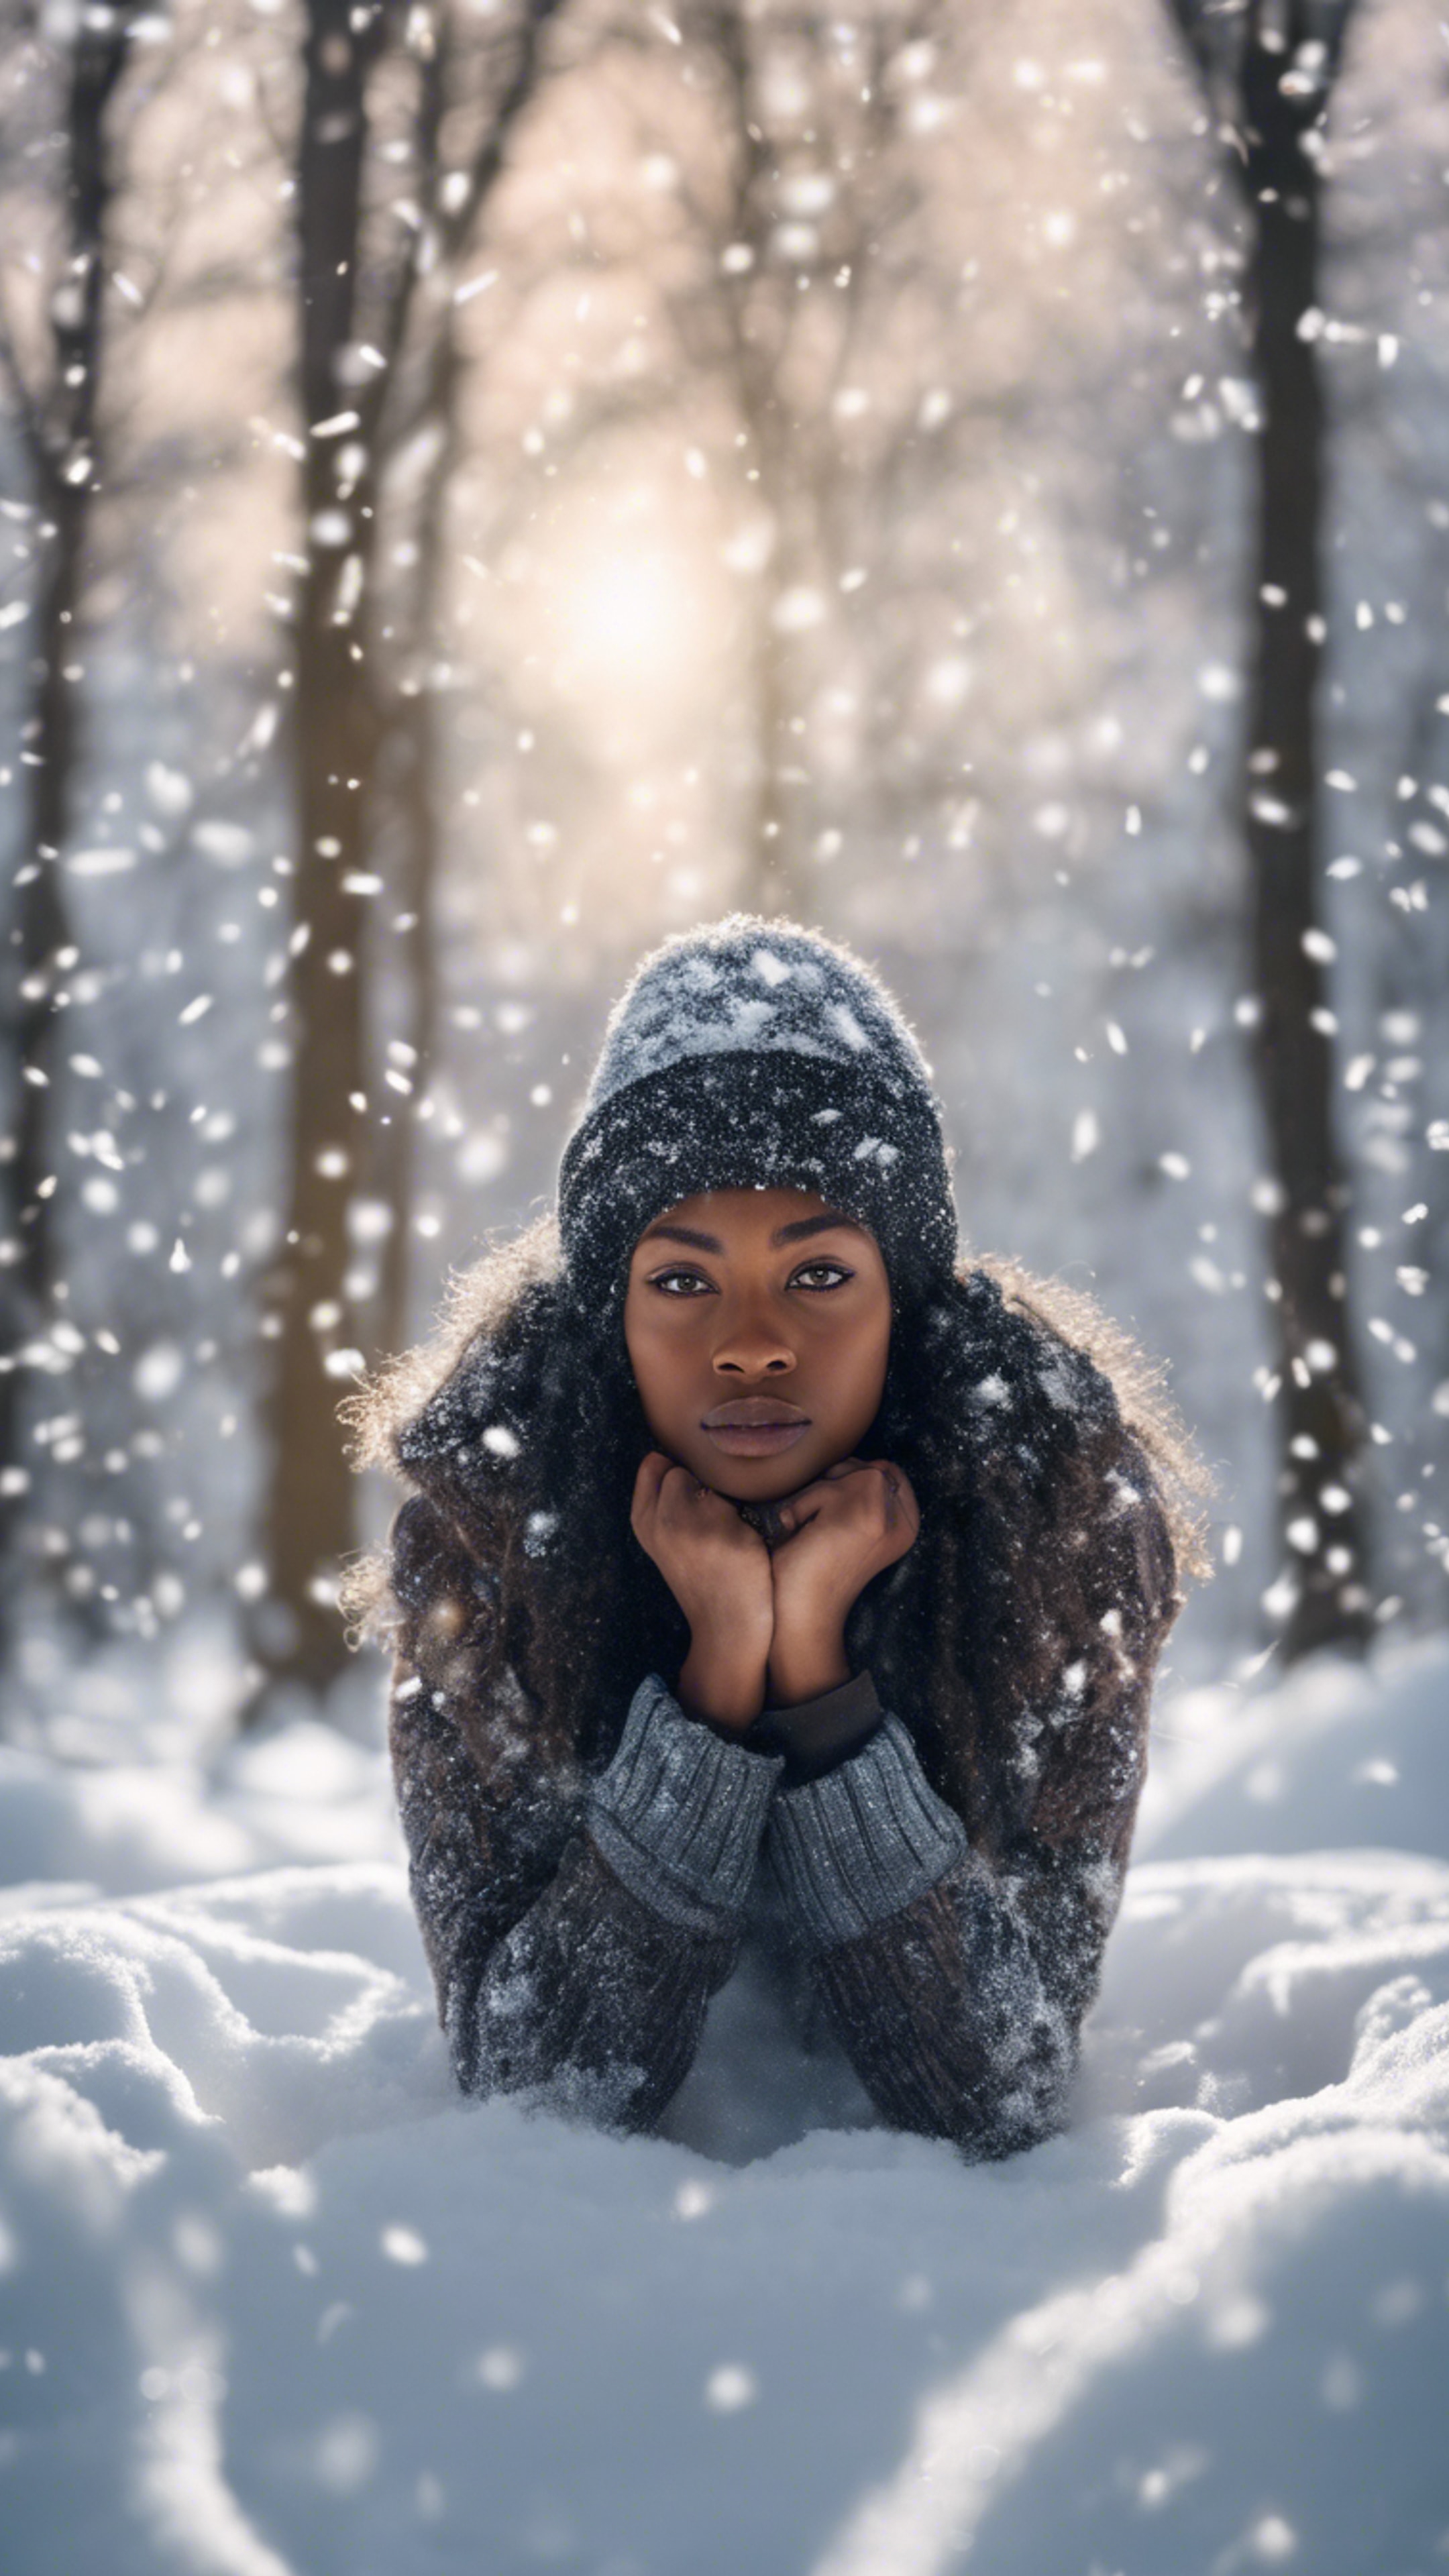 A black girl in a winter scene making a snow angel.壁紙[fcbe3ea2579748289c20]